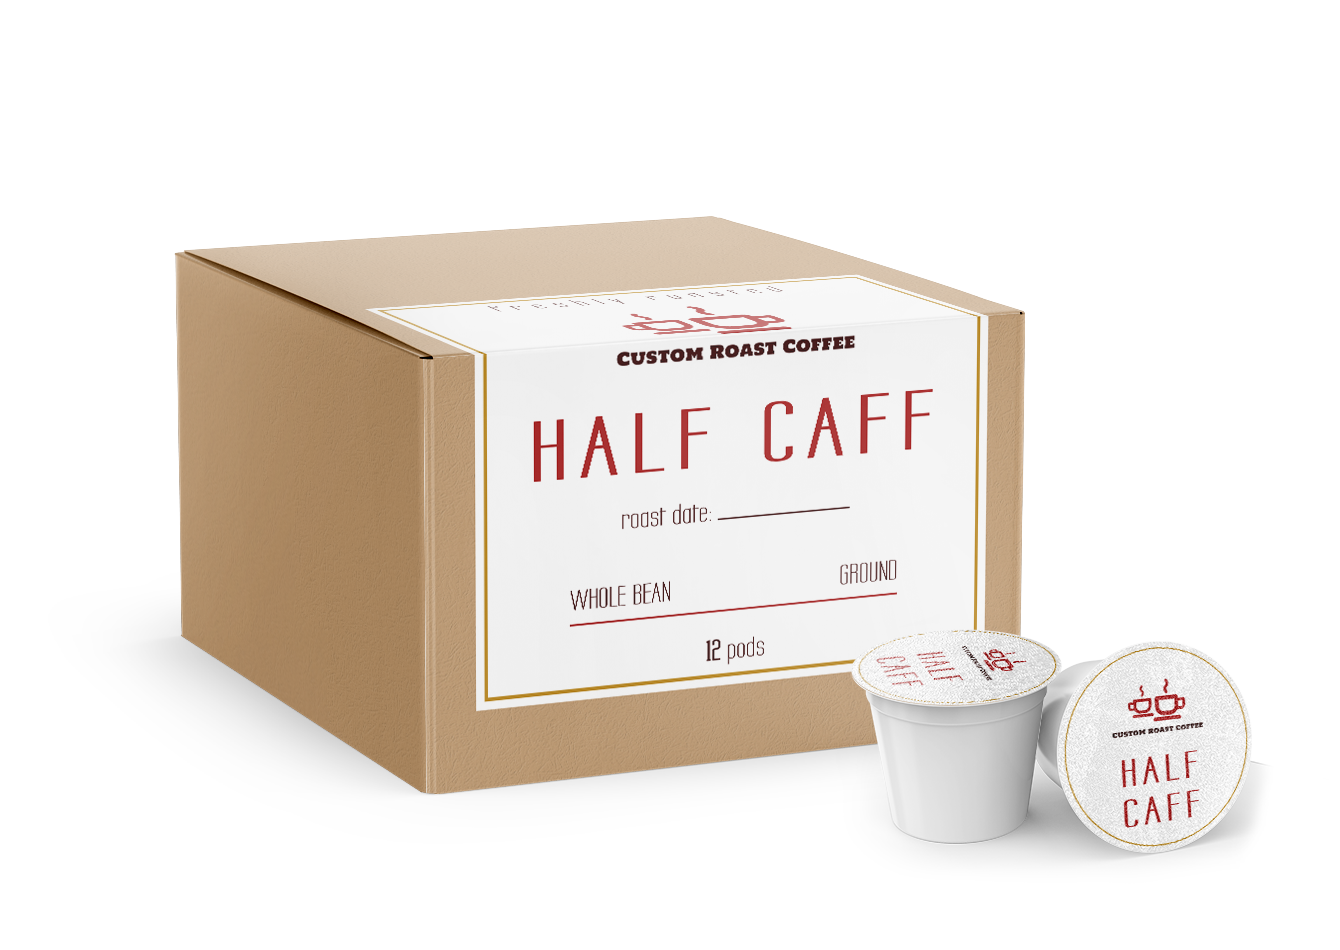 Half Caf